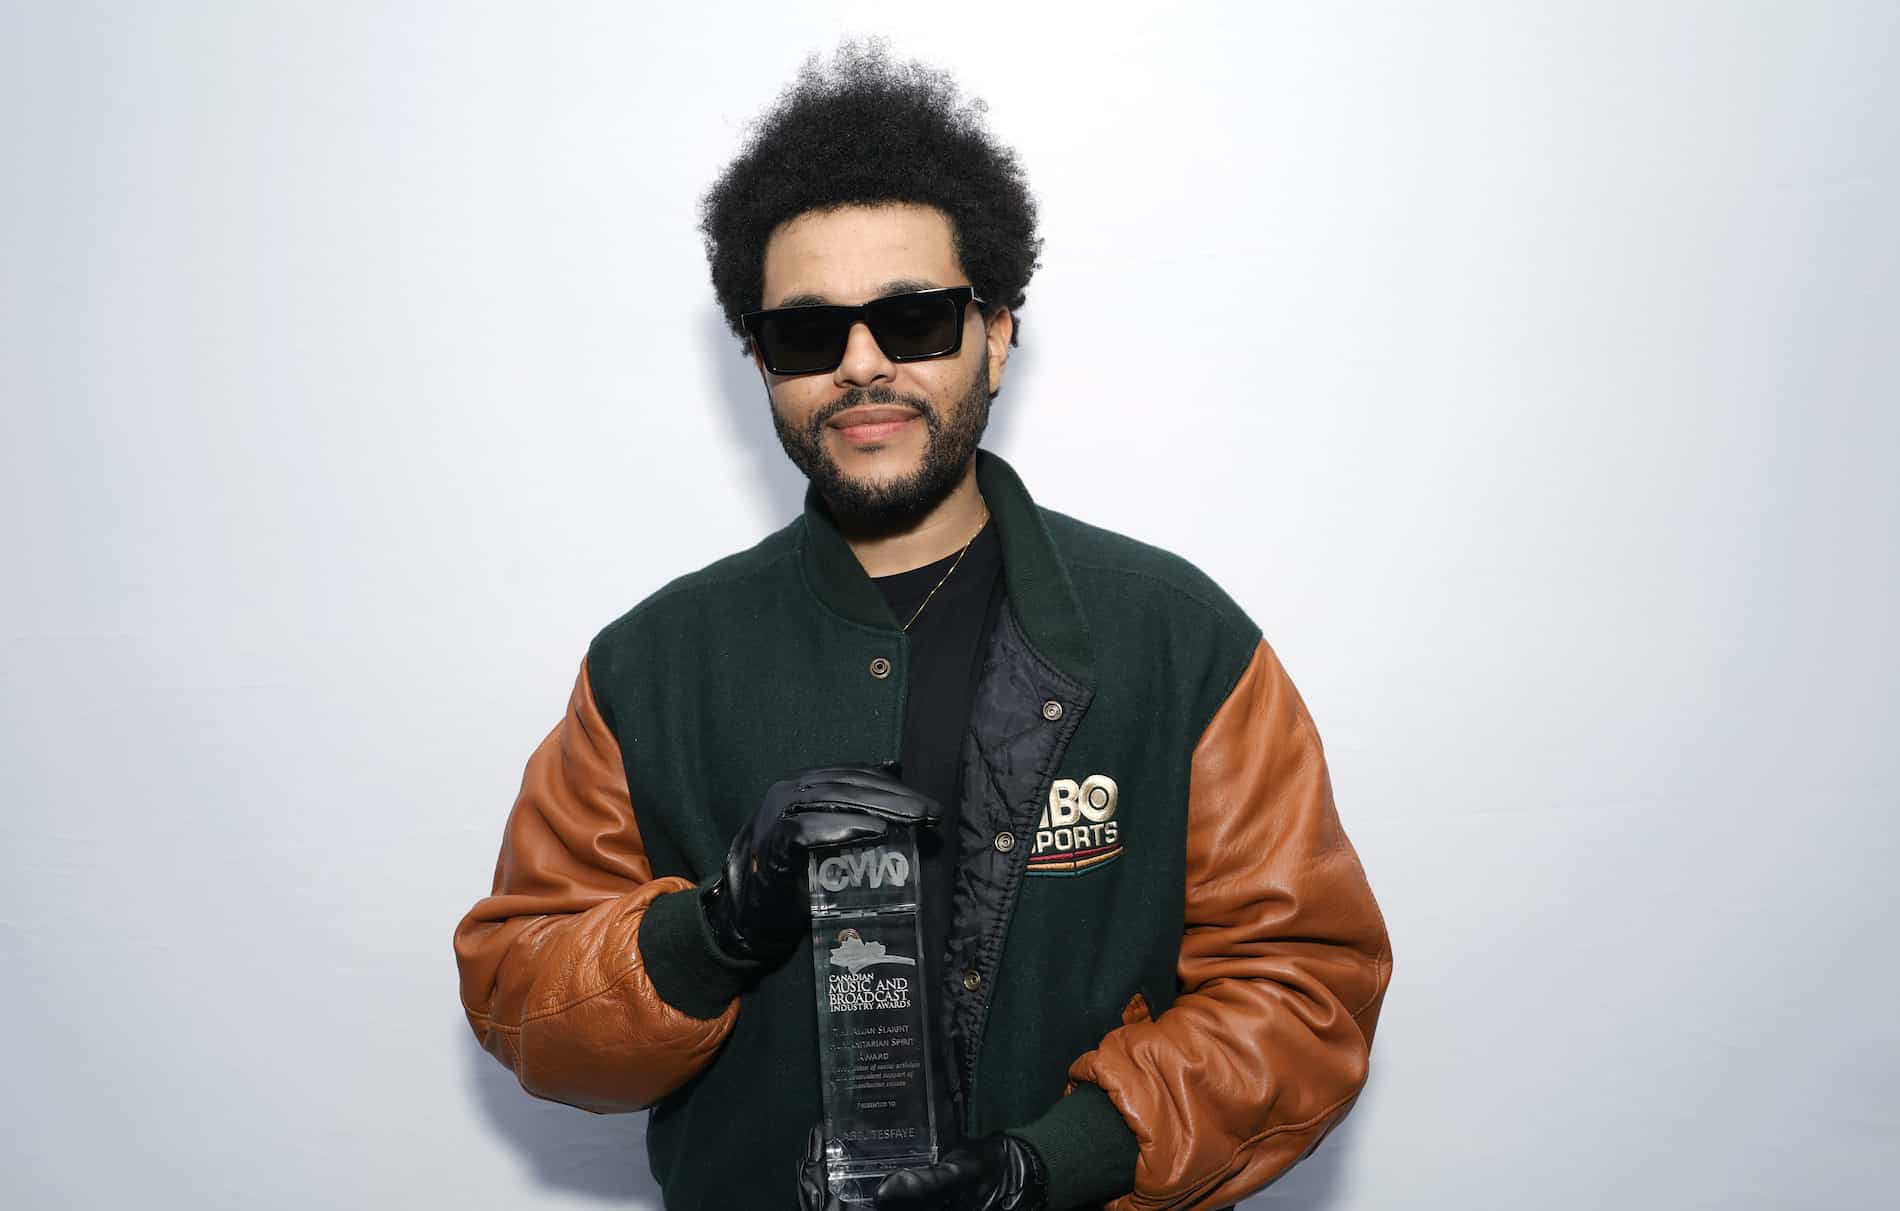 Cantante The Weeknd quiere “matar” su nombre artístico para “renacer”